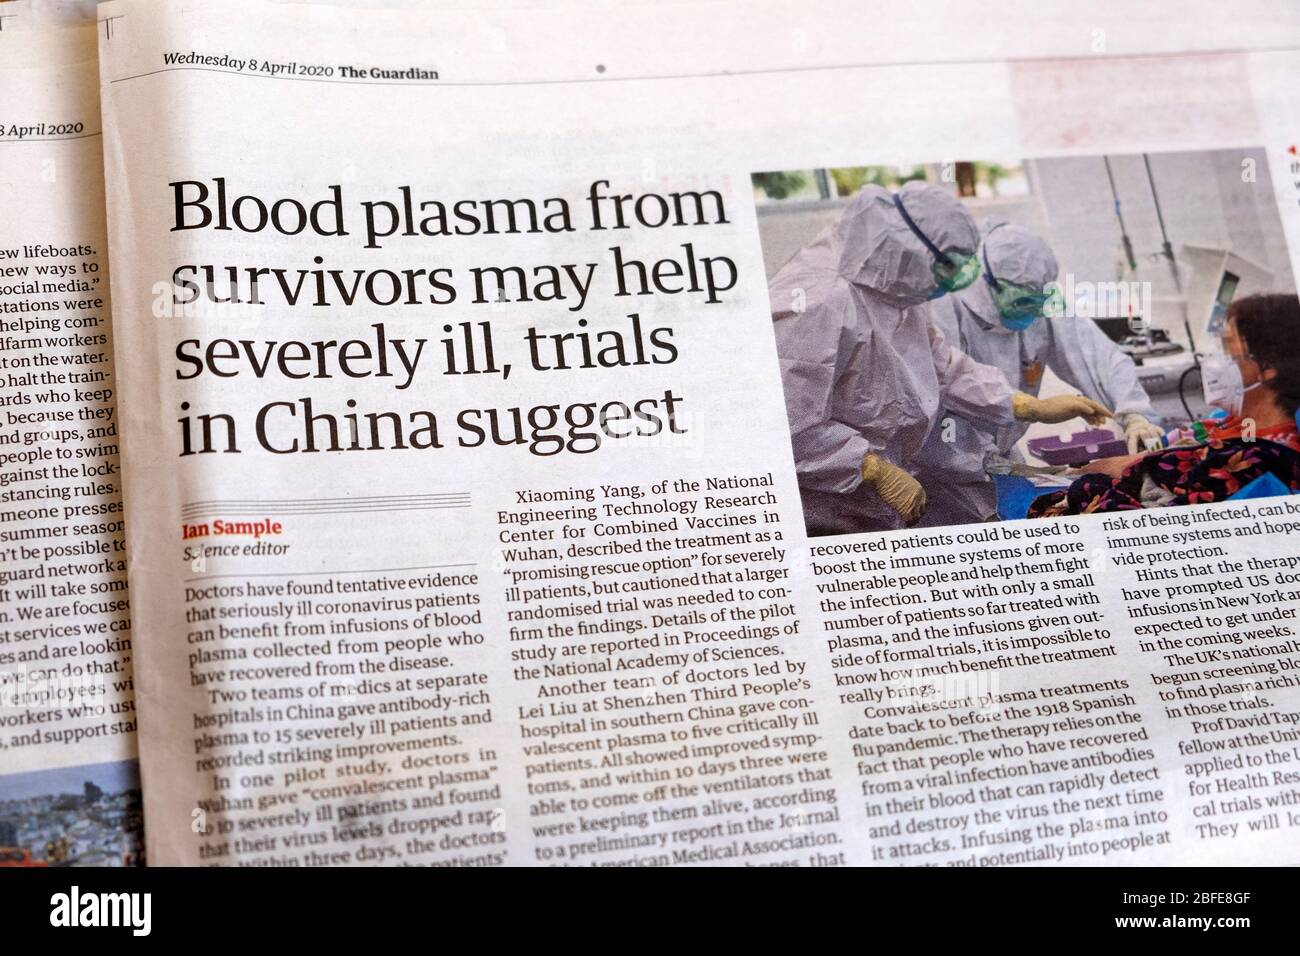 Guardian giornale all'interno della pagina articolo 'plasma di sangue dai sopravvissuti può aiutare gravemente ammalato, i processi in Cina suggeriscono' 8 aprile 2020 Londra Inghilterra Regno Unito Foto Stock